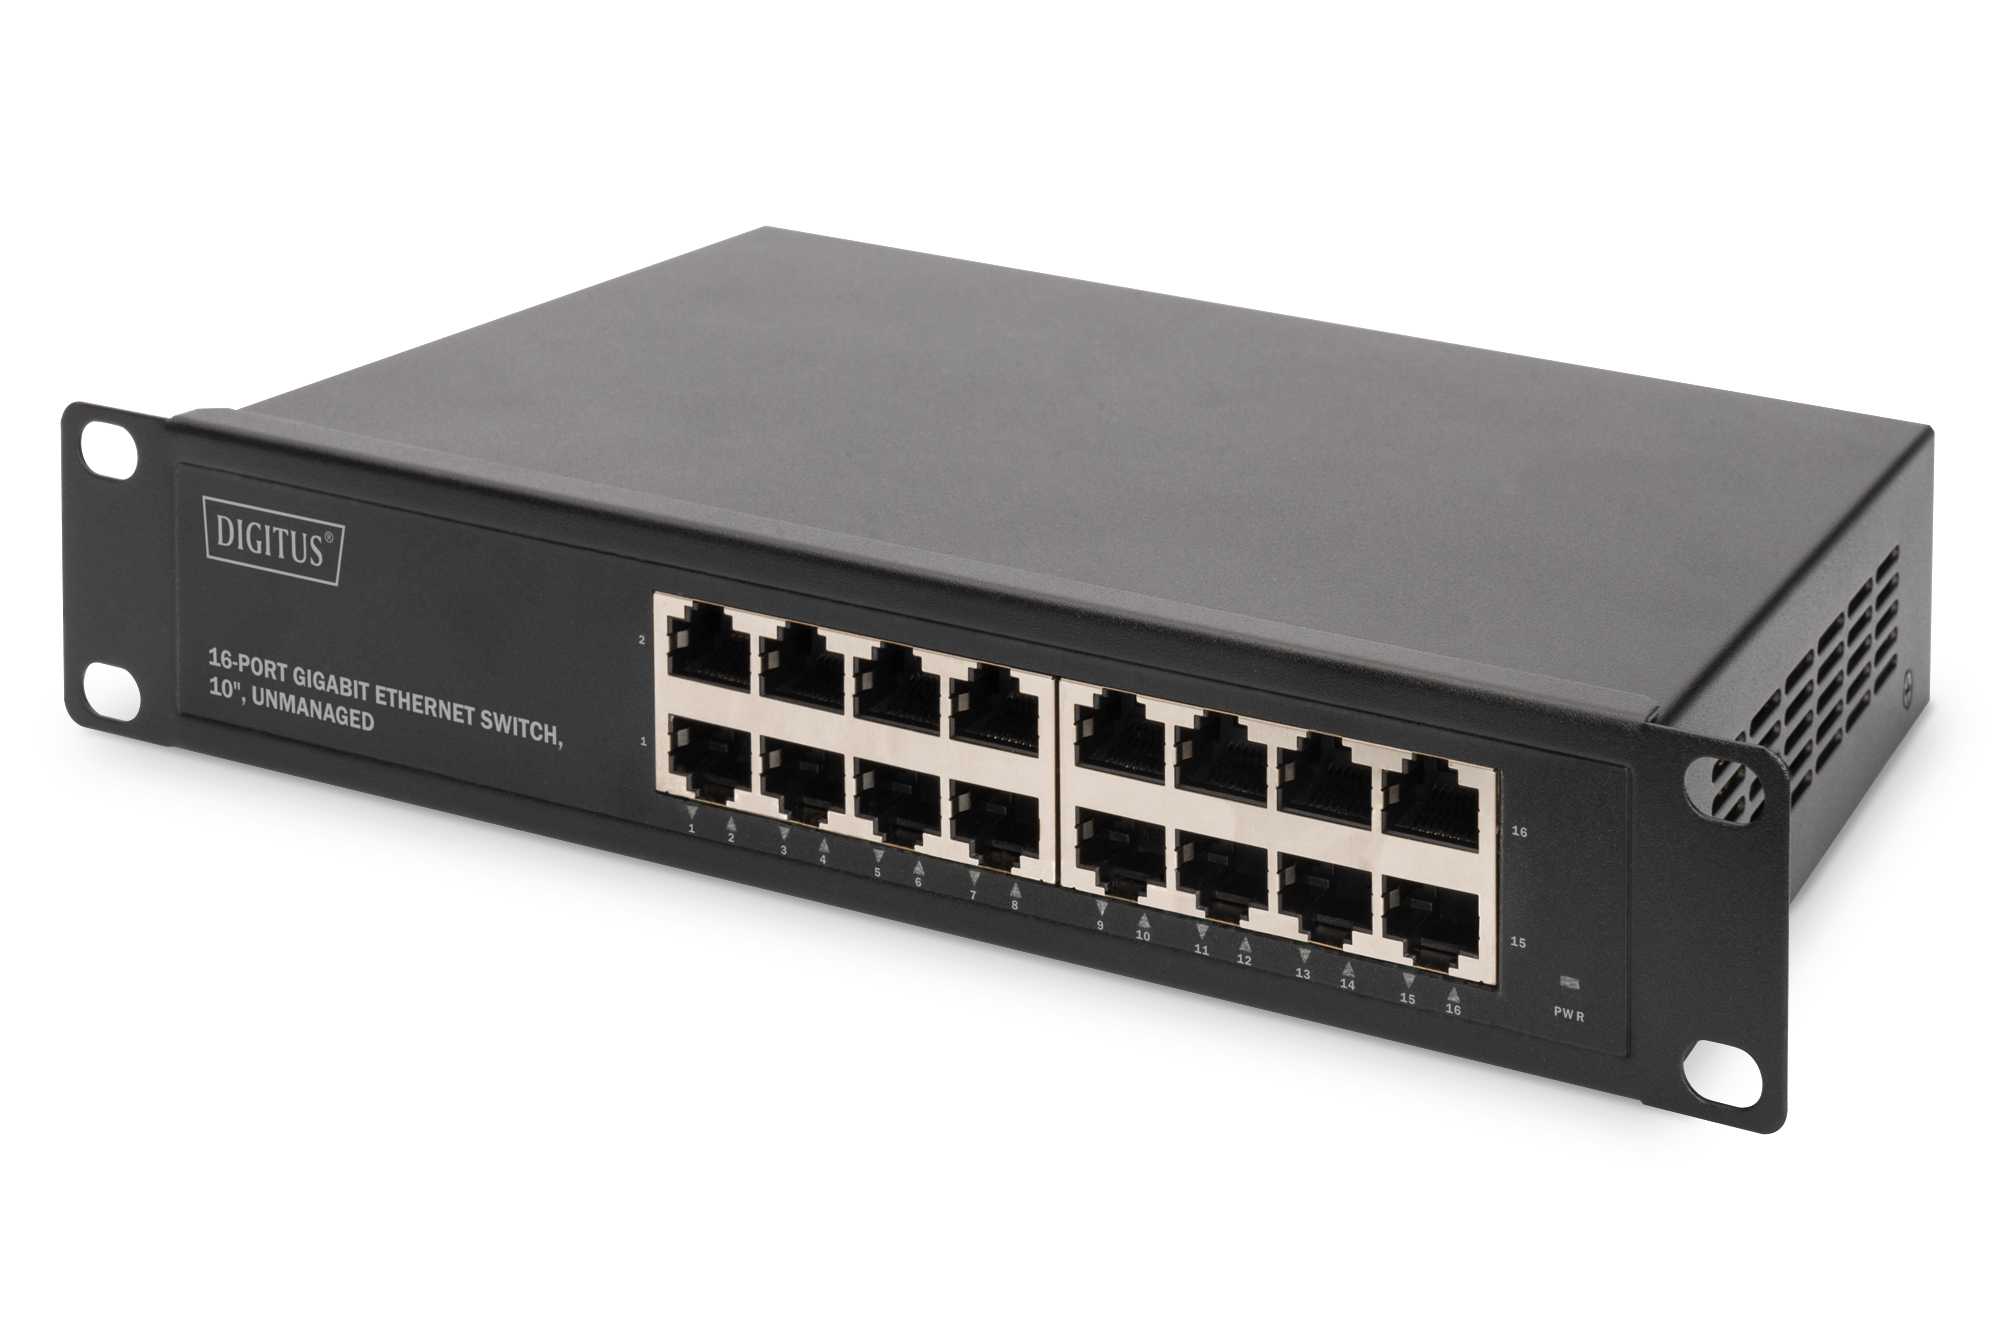 Digitus Gigabit Ethernet Switch 10 inch, unmanaged (DN-80115) kopen » Centralpoint